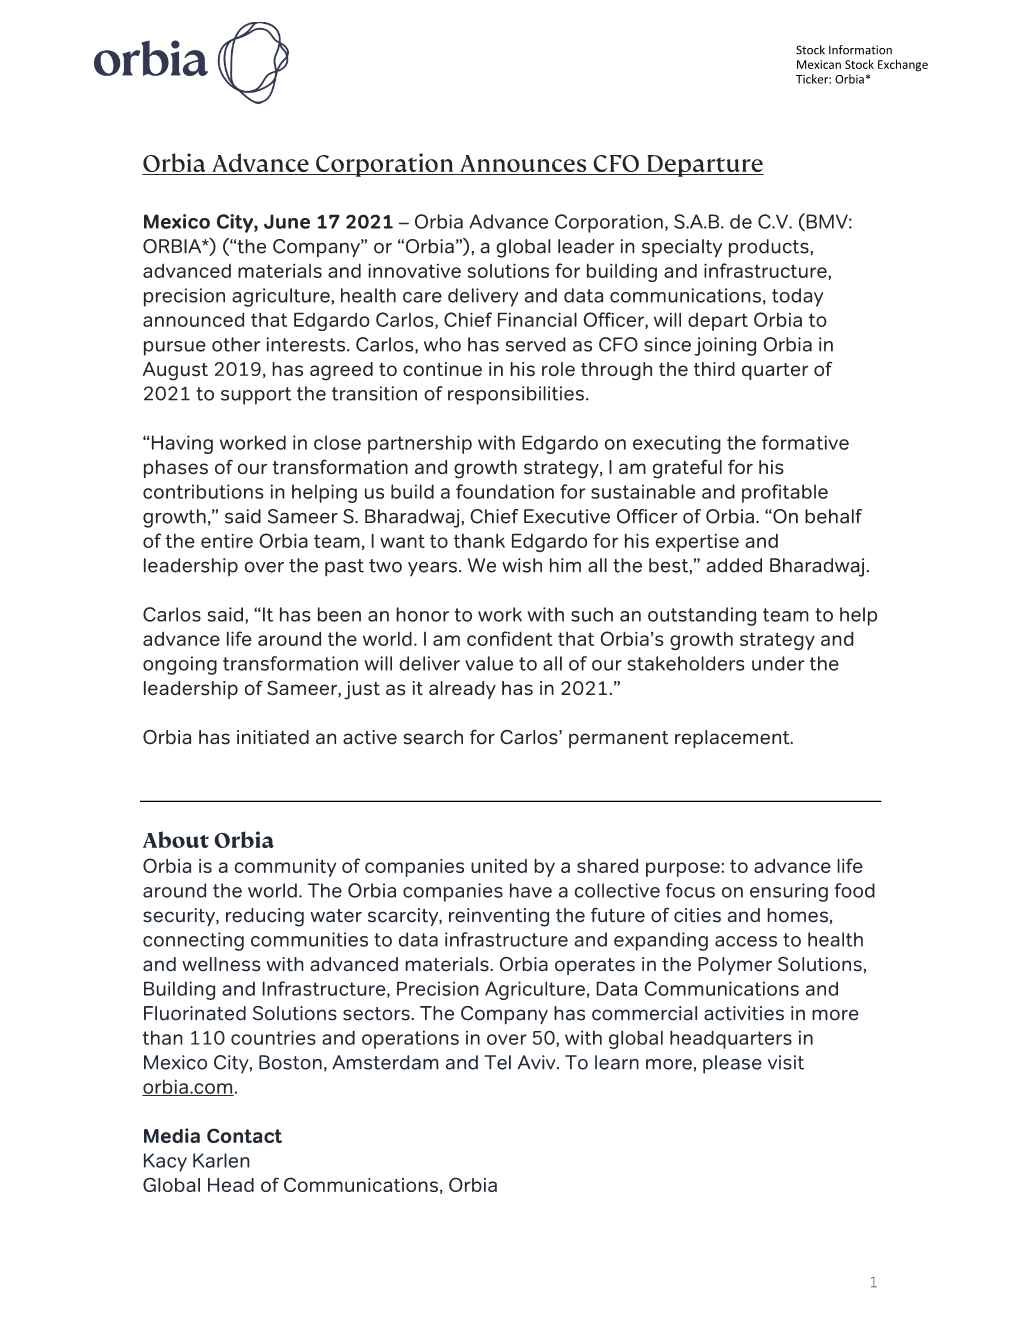 Orbia Advance Corporation Announces CFO Departure